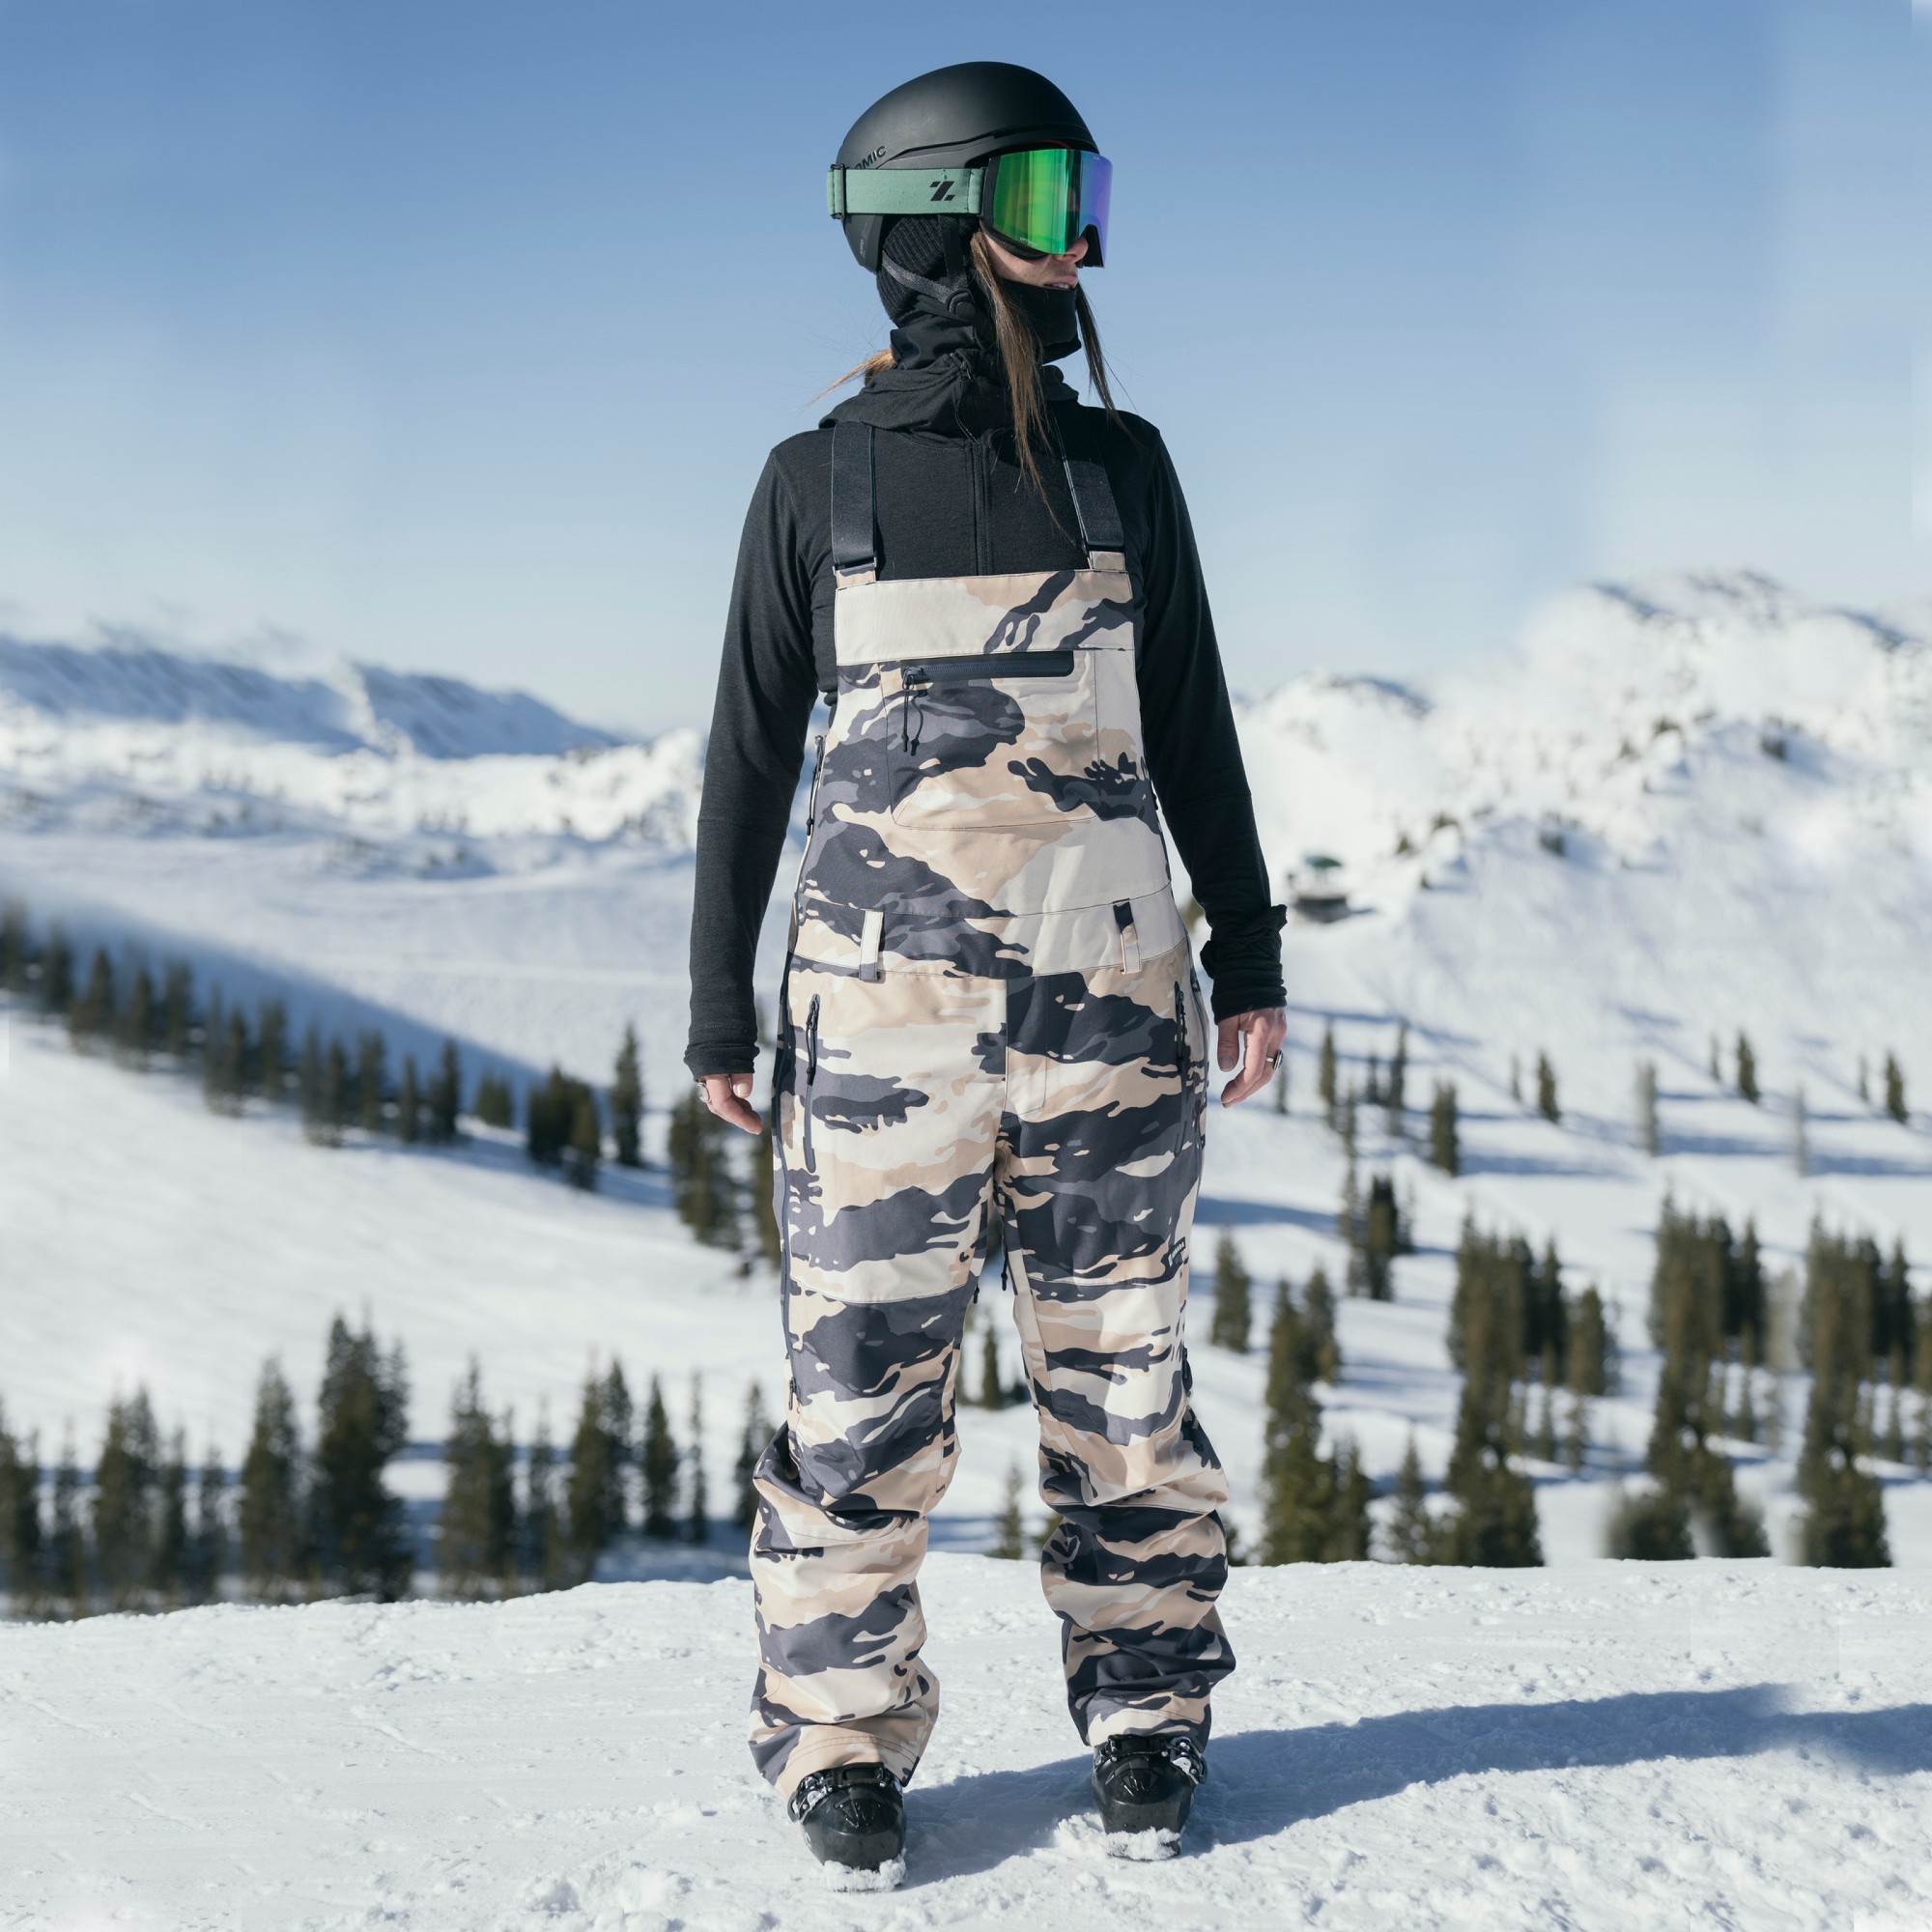 Armada Pascore Women's Ski/Snowboard Bib Pants